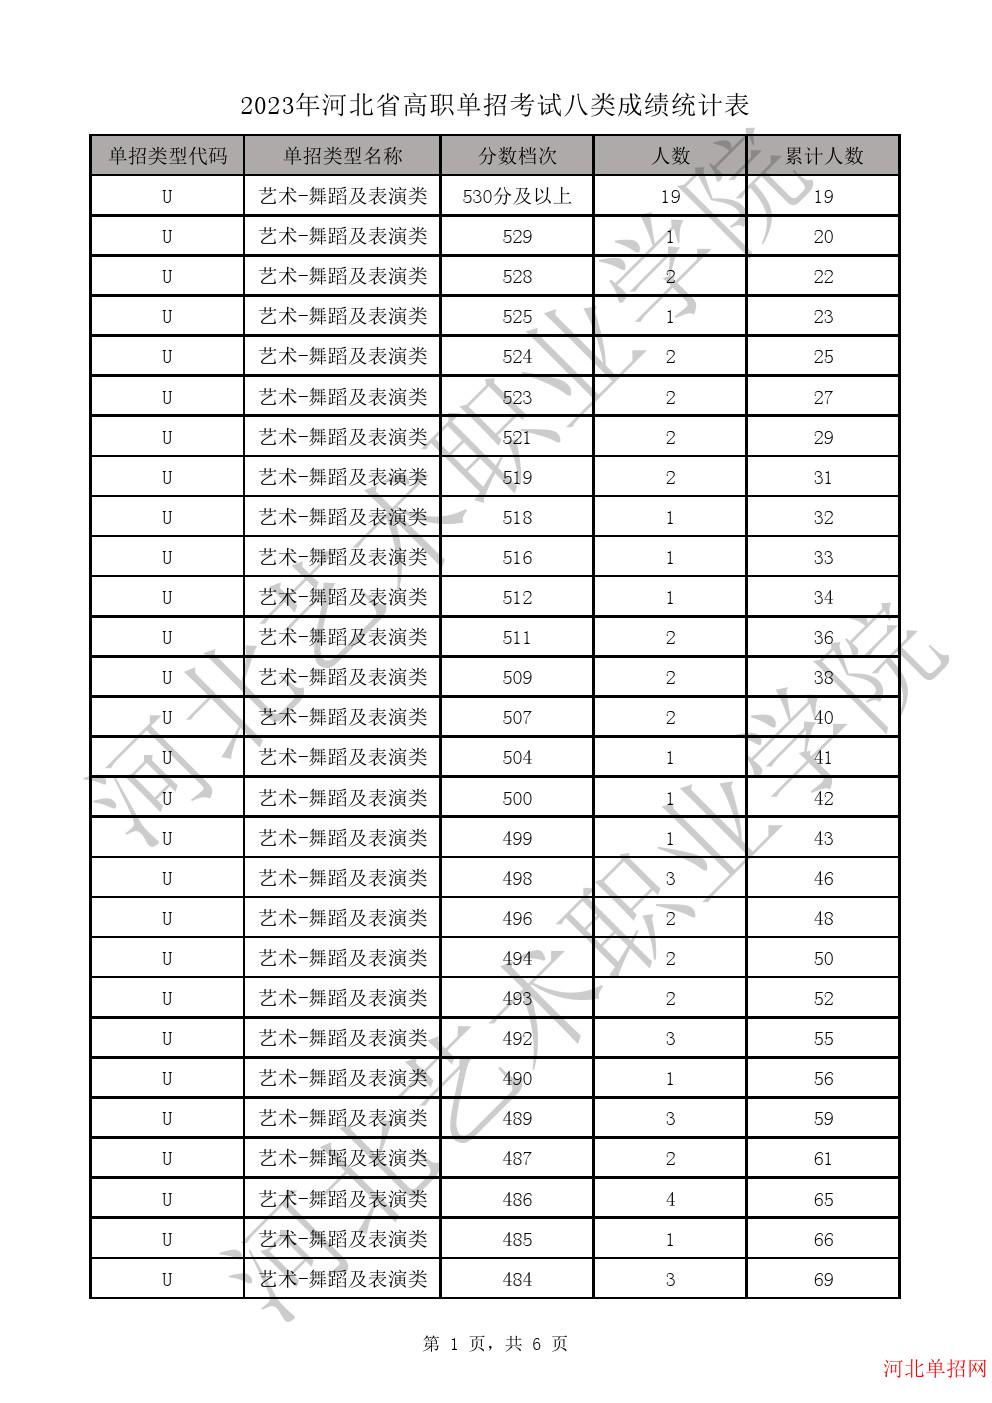 2023年河北省高职单招考试八类一分一档表-U艺术-舞蹈及表演类一分一档表 图1